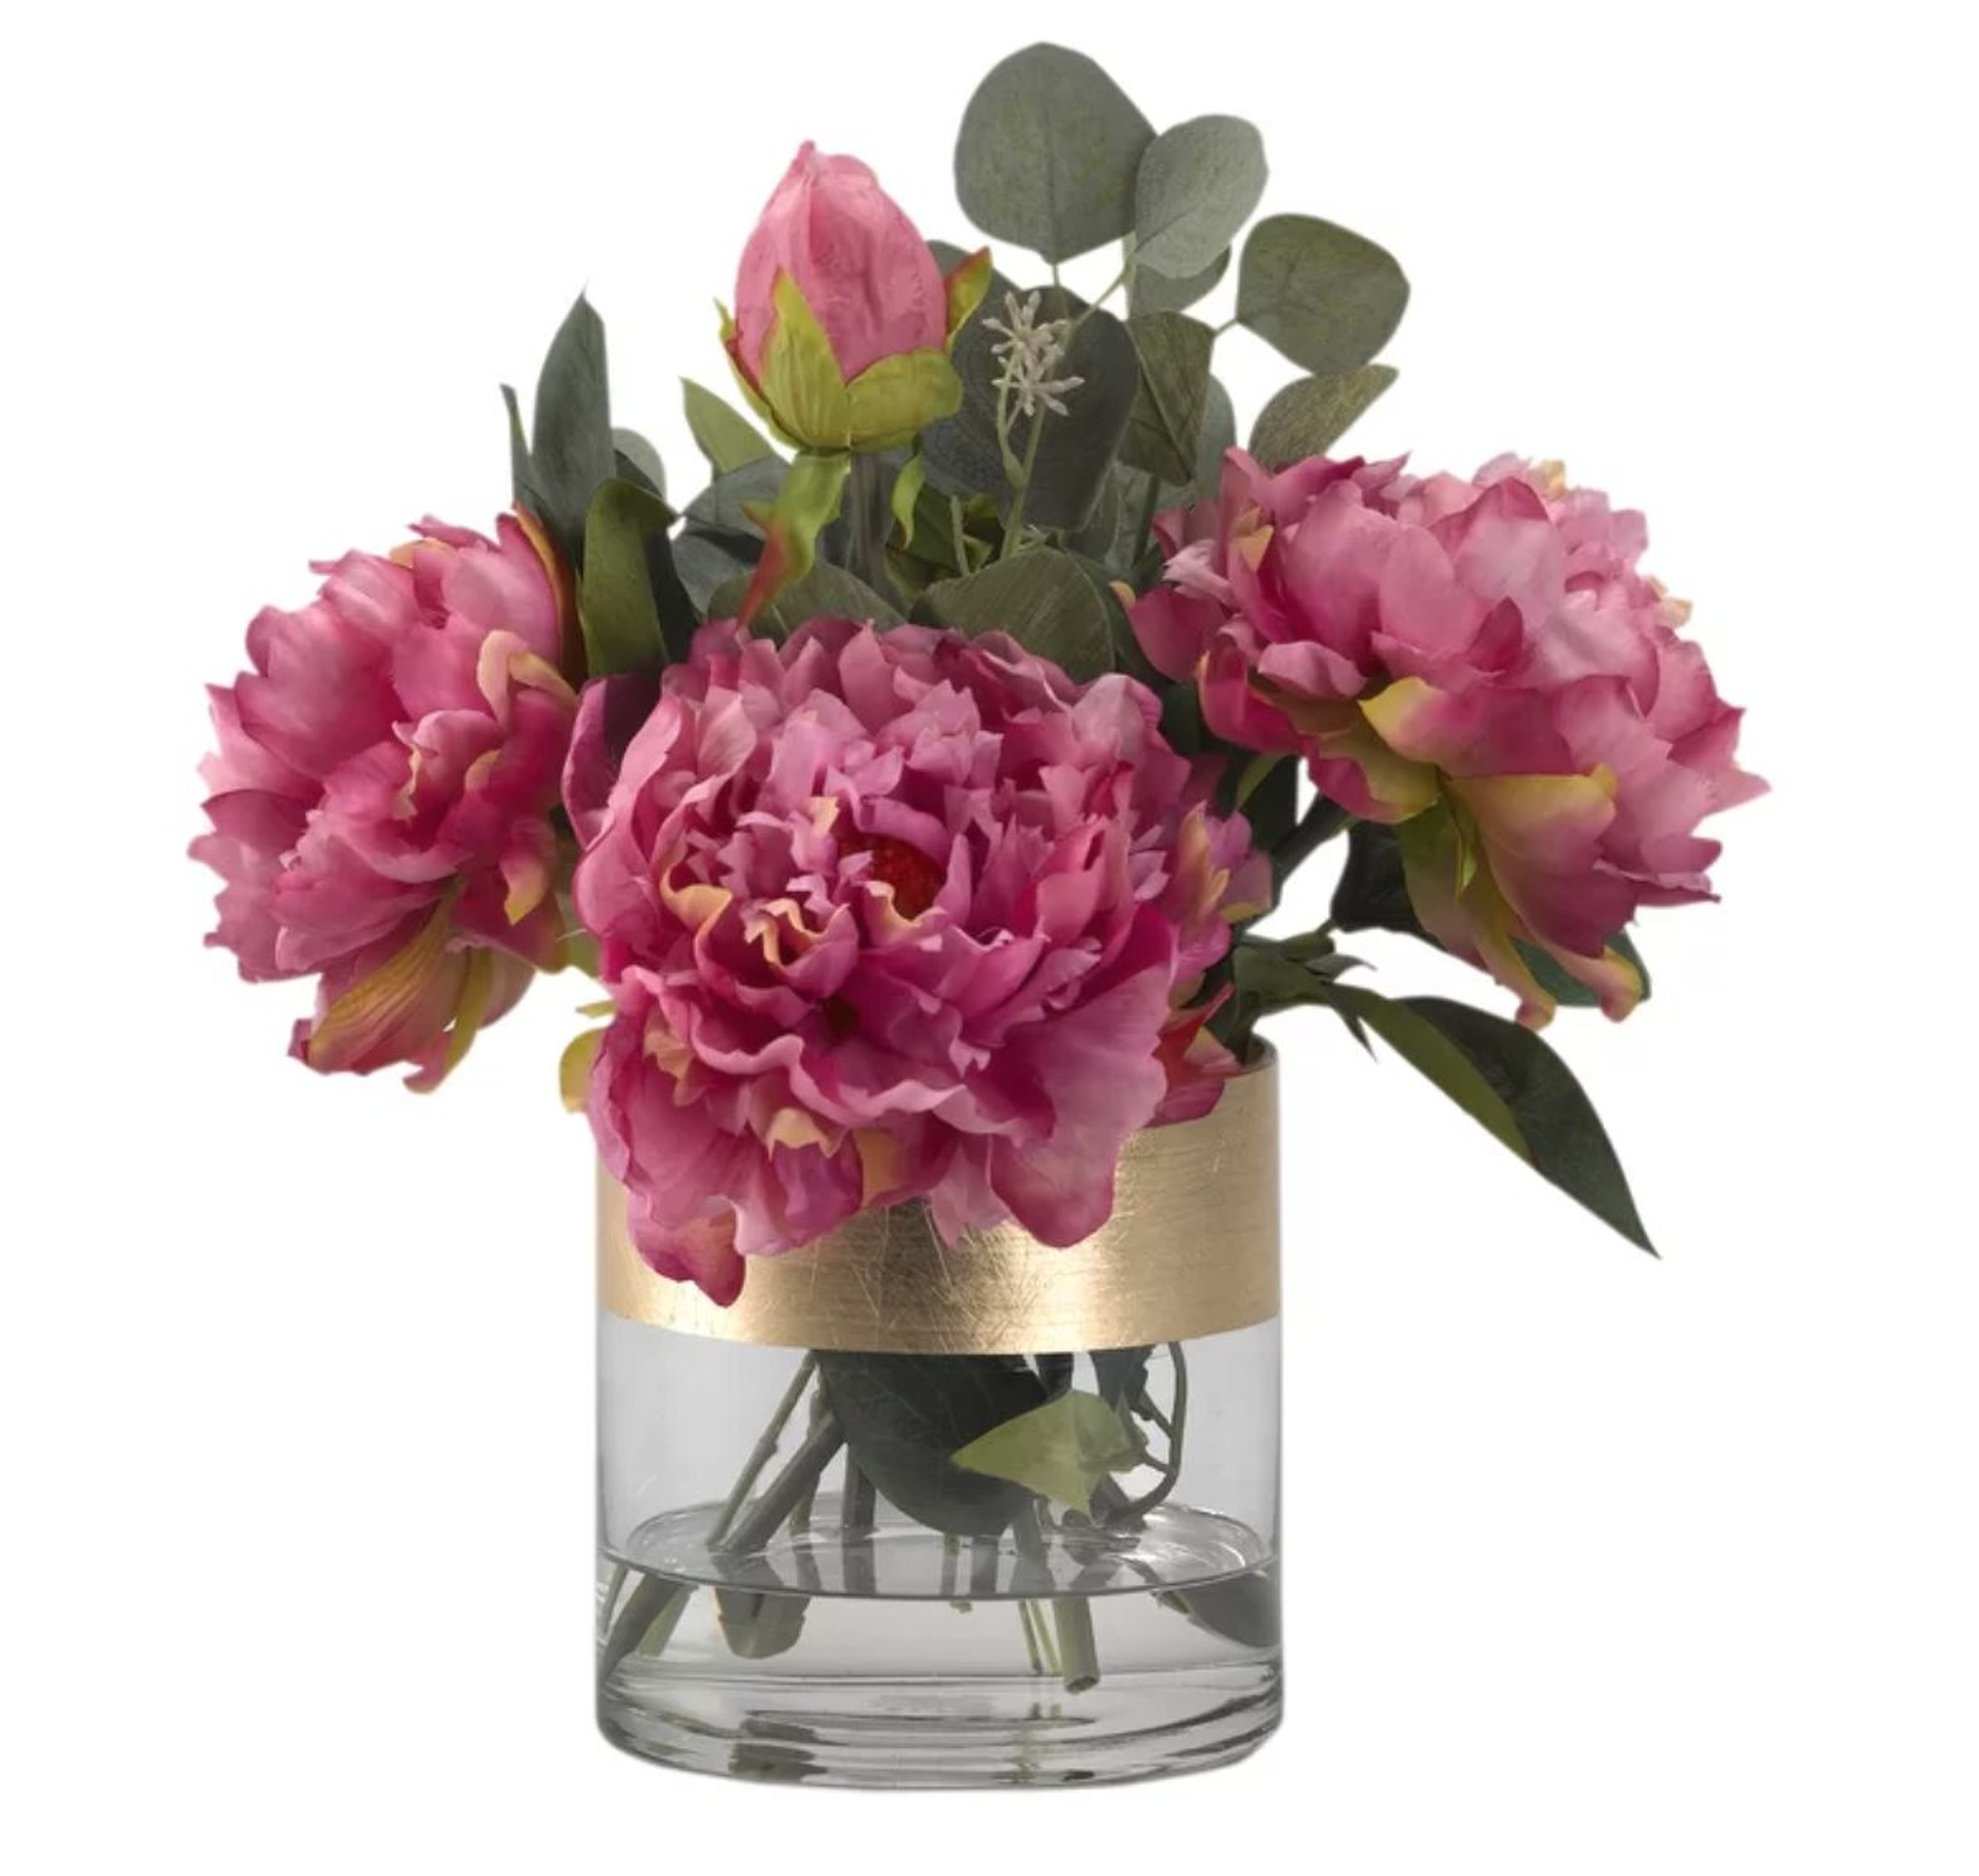 Peonies Floral Arrangement in Glass Vase - Wayfair